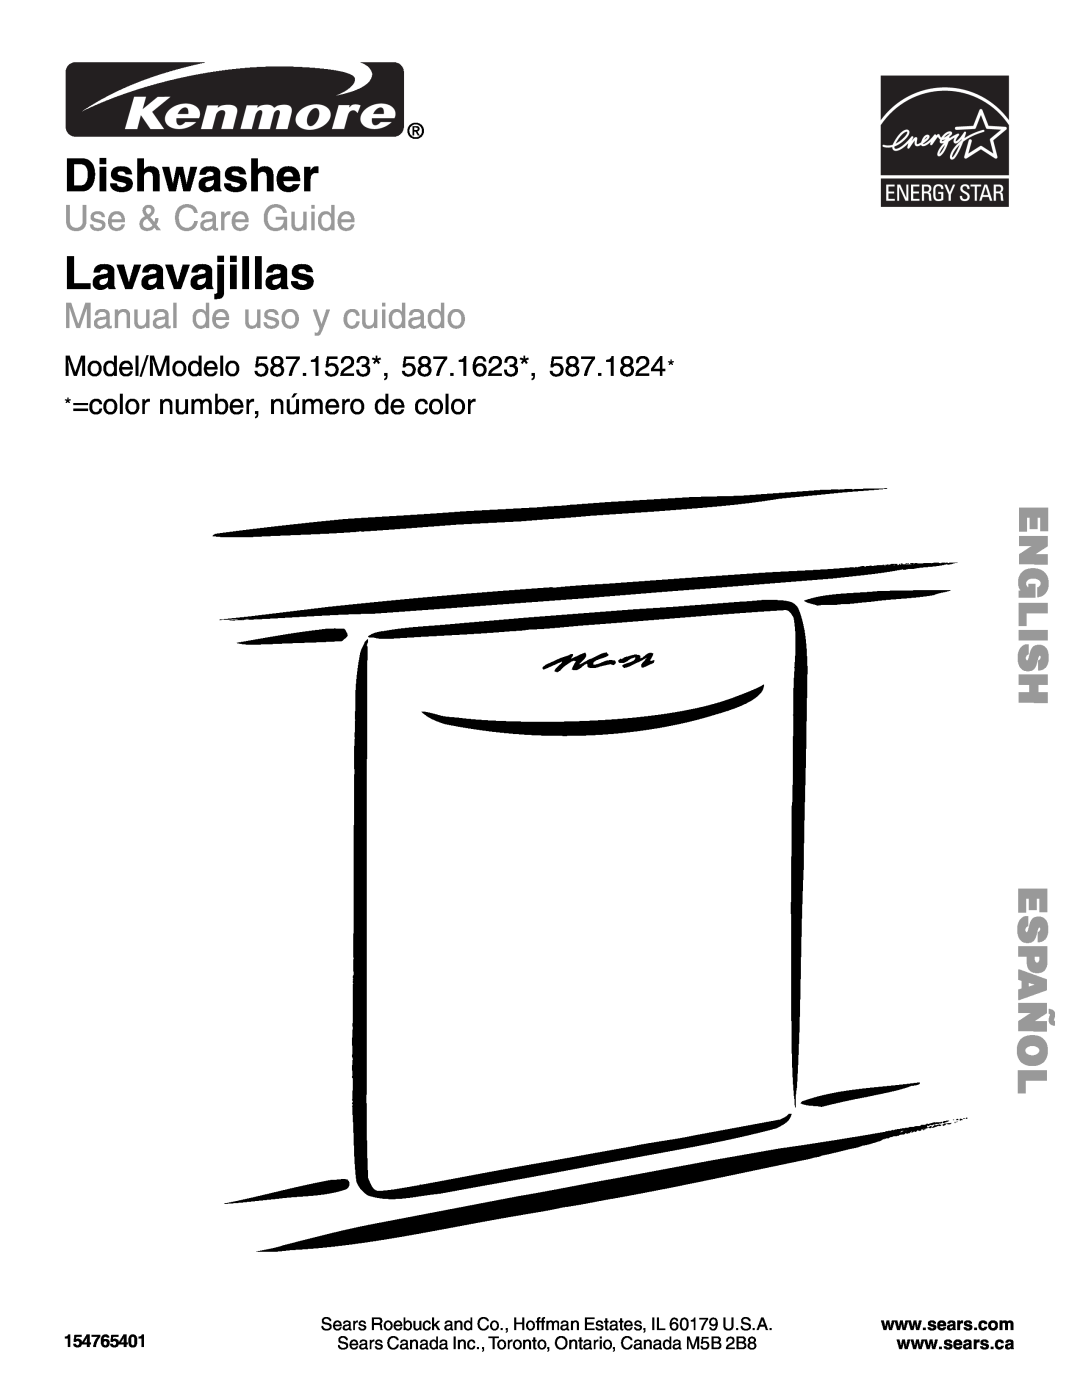 Kenmore 587.1523 manual English Español, Dishwasher, Lavavajillas, Use & Care Guide, Manual de uso y cuidado 